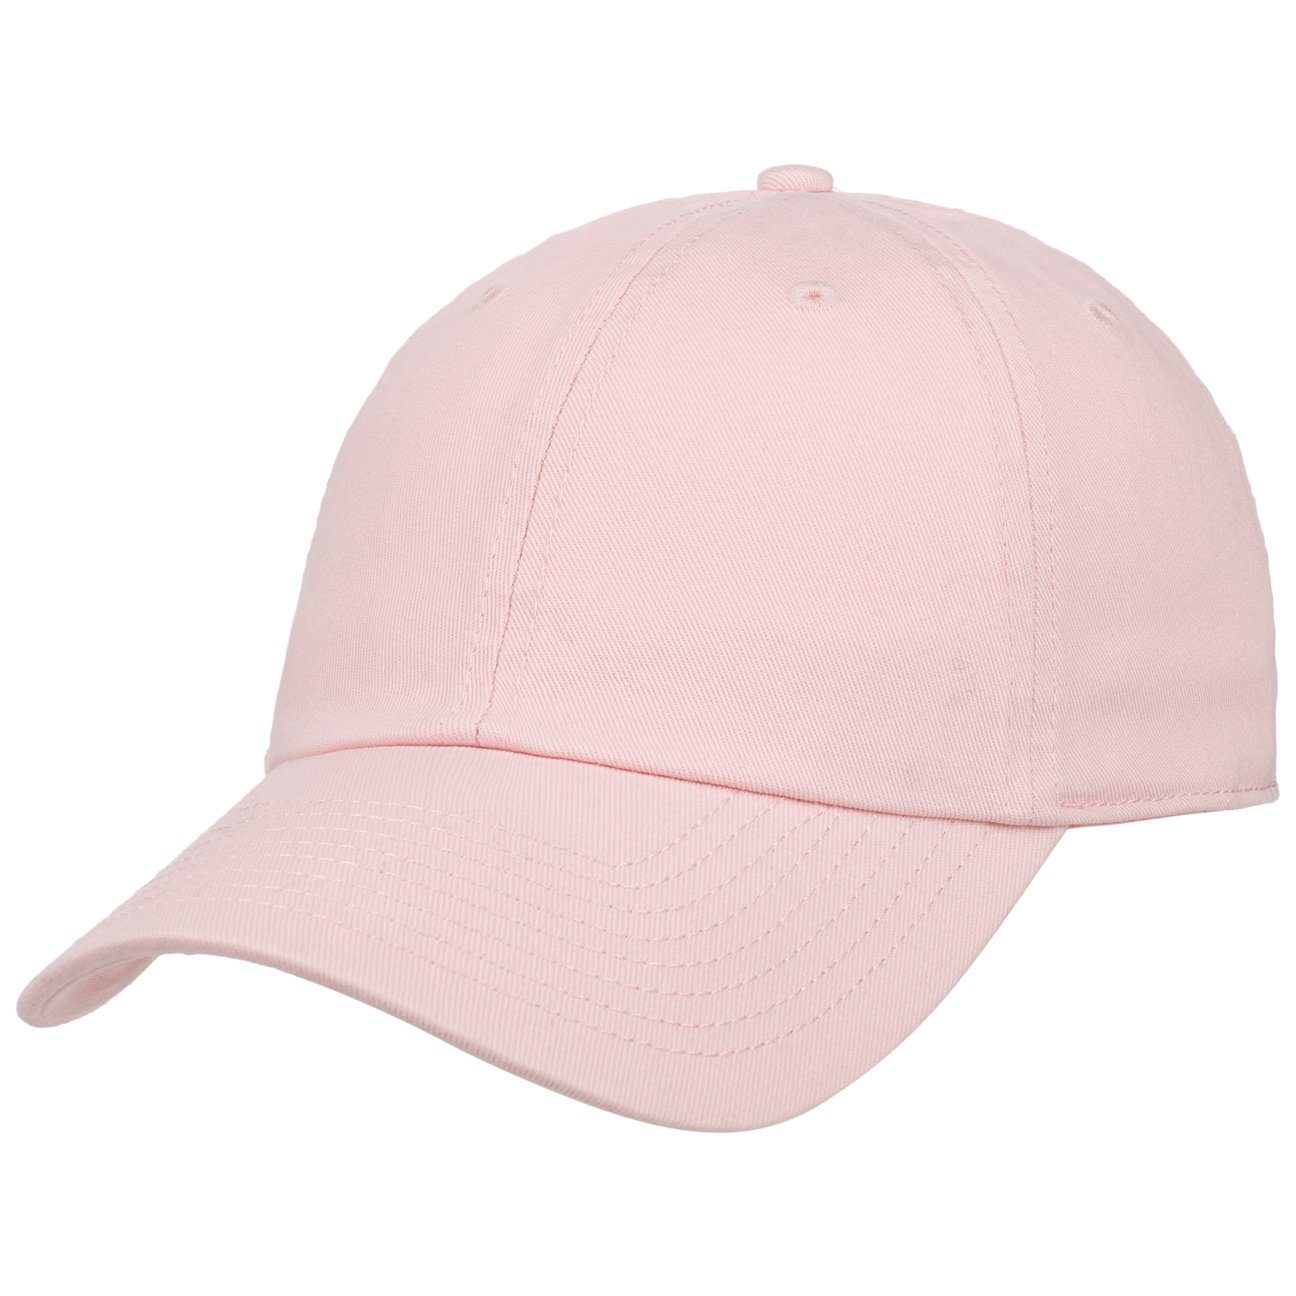 Rosa Damen Caps online kaufen » Pinke Damen Kappen | OTTO